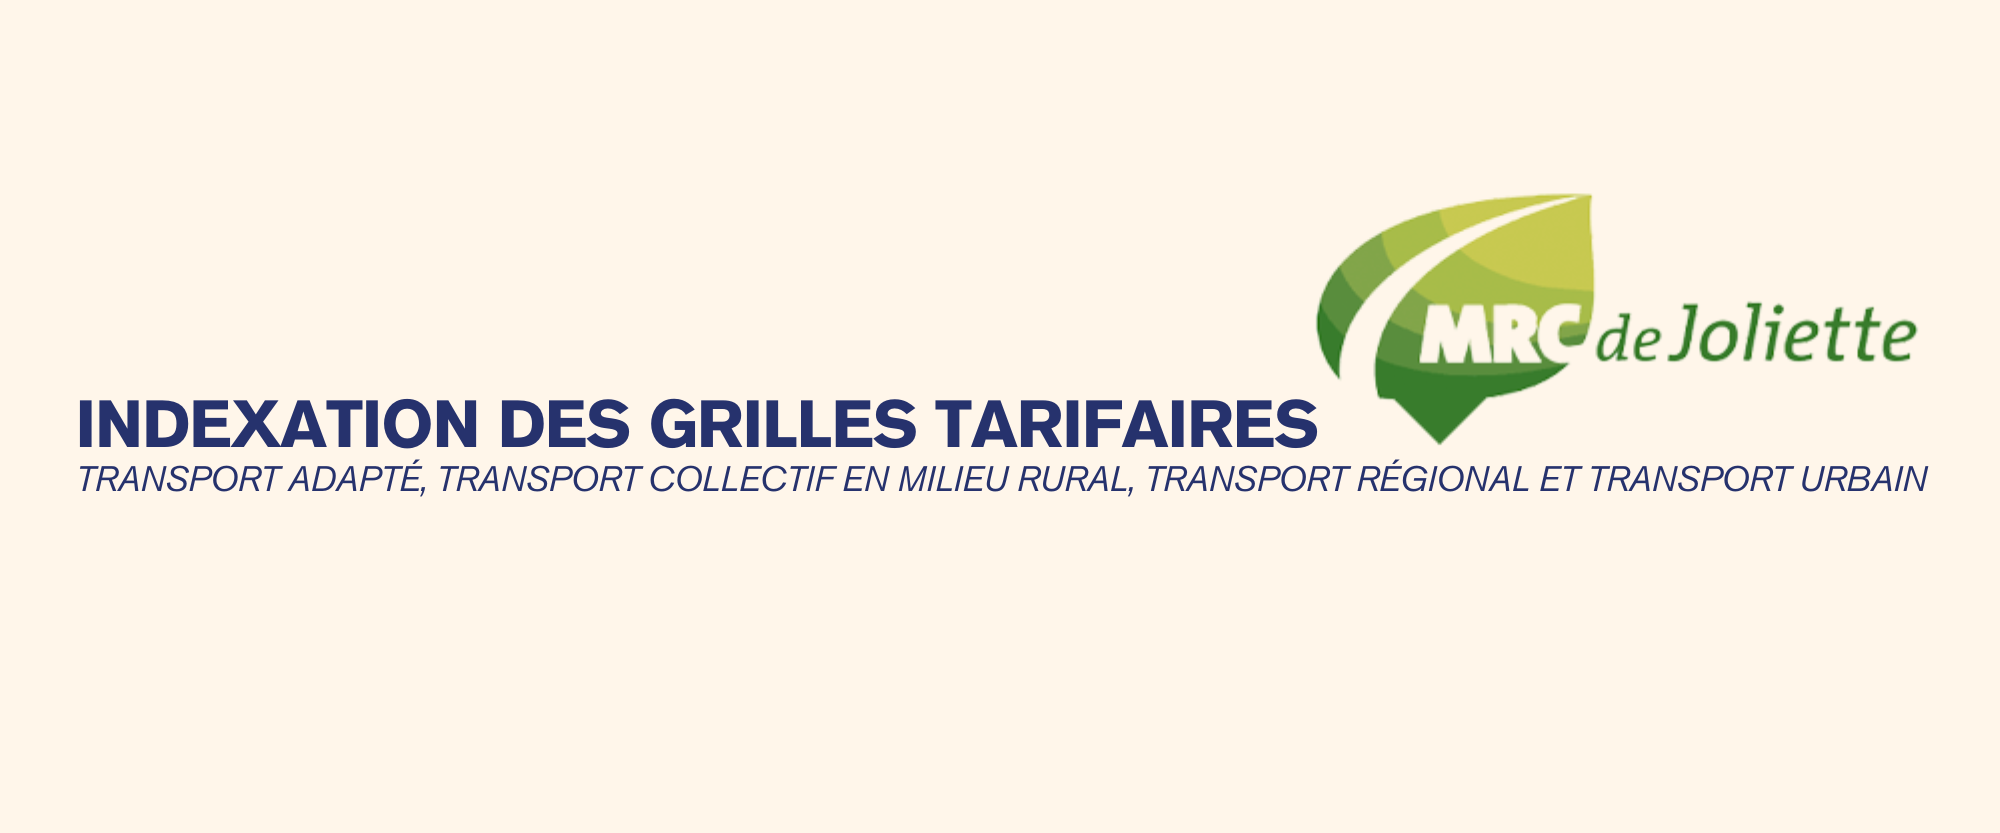 INDEXATION DES GRILLES TARIFAIRES – MRC DE JOLIETTE